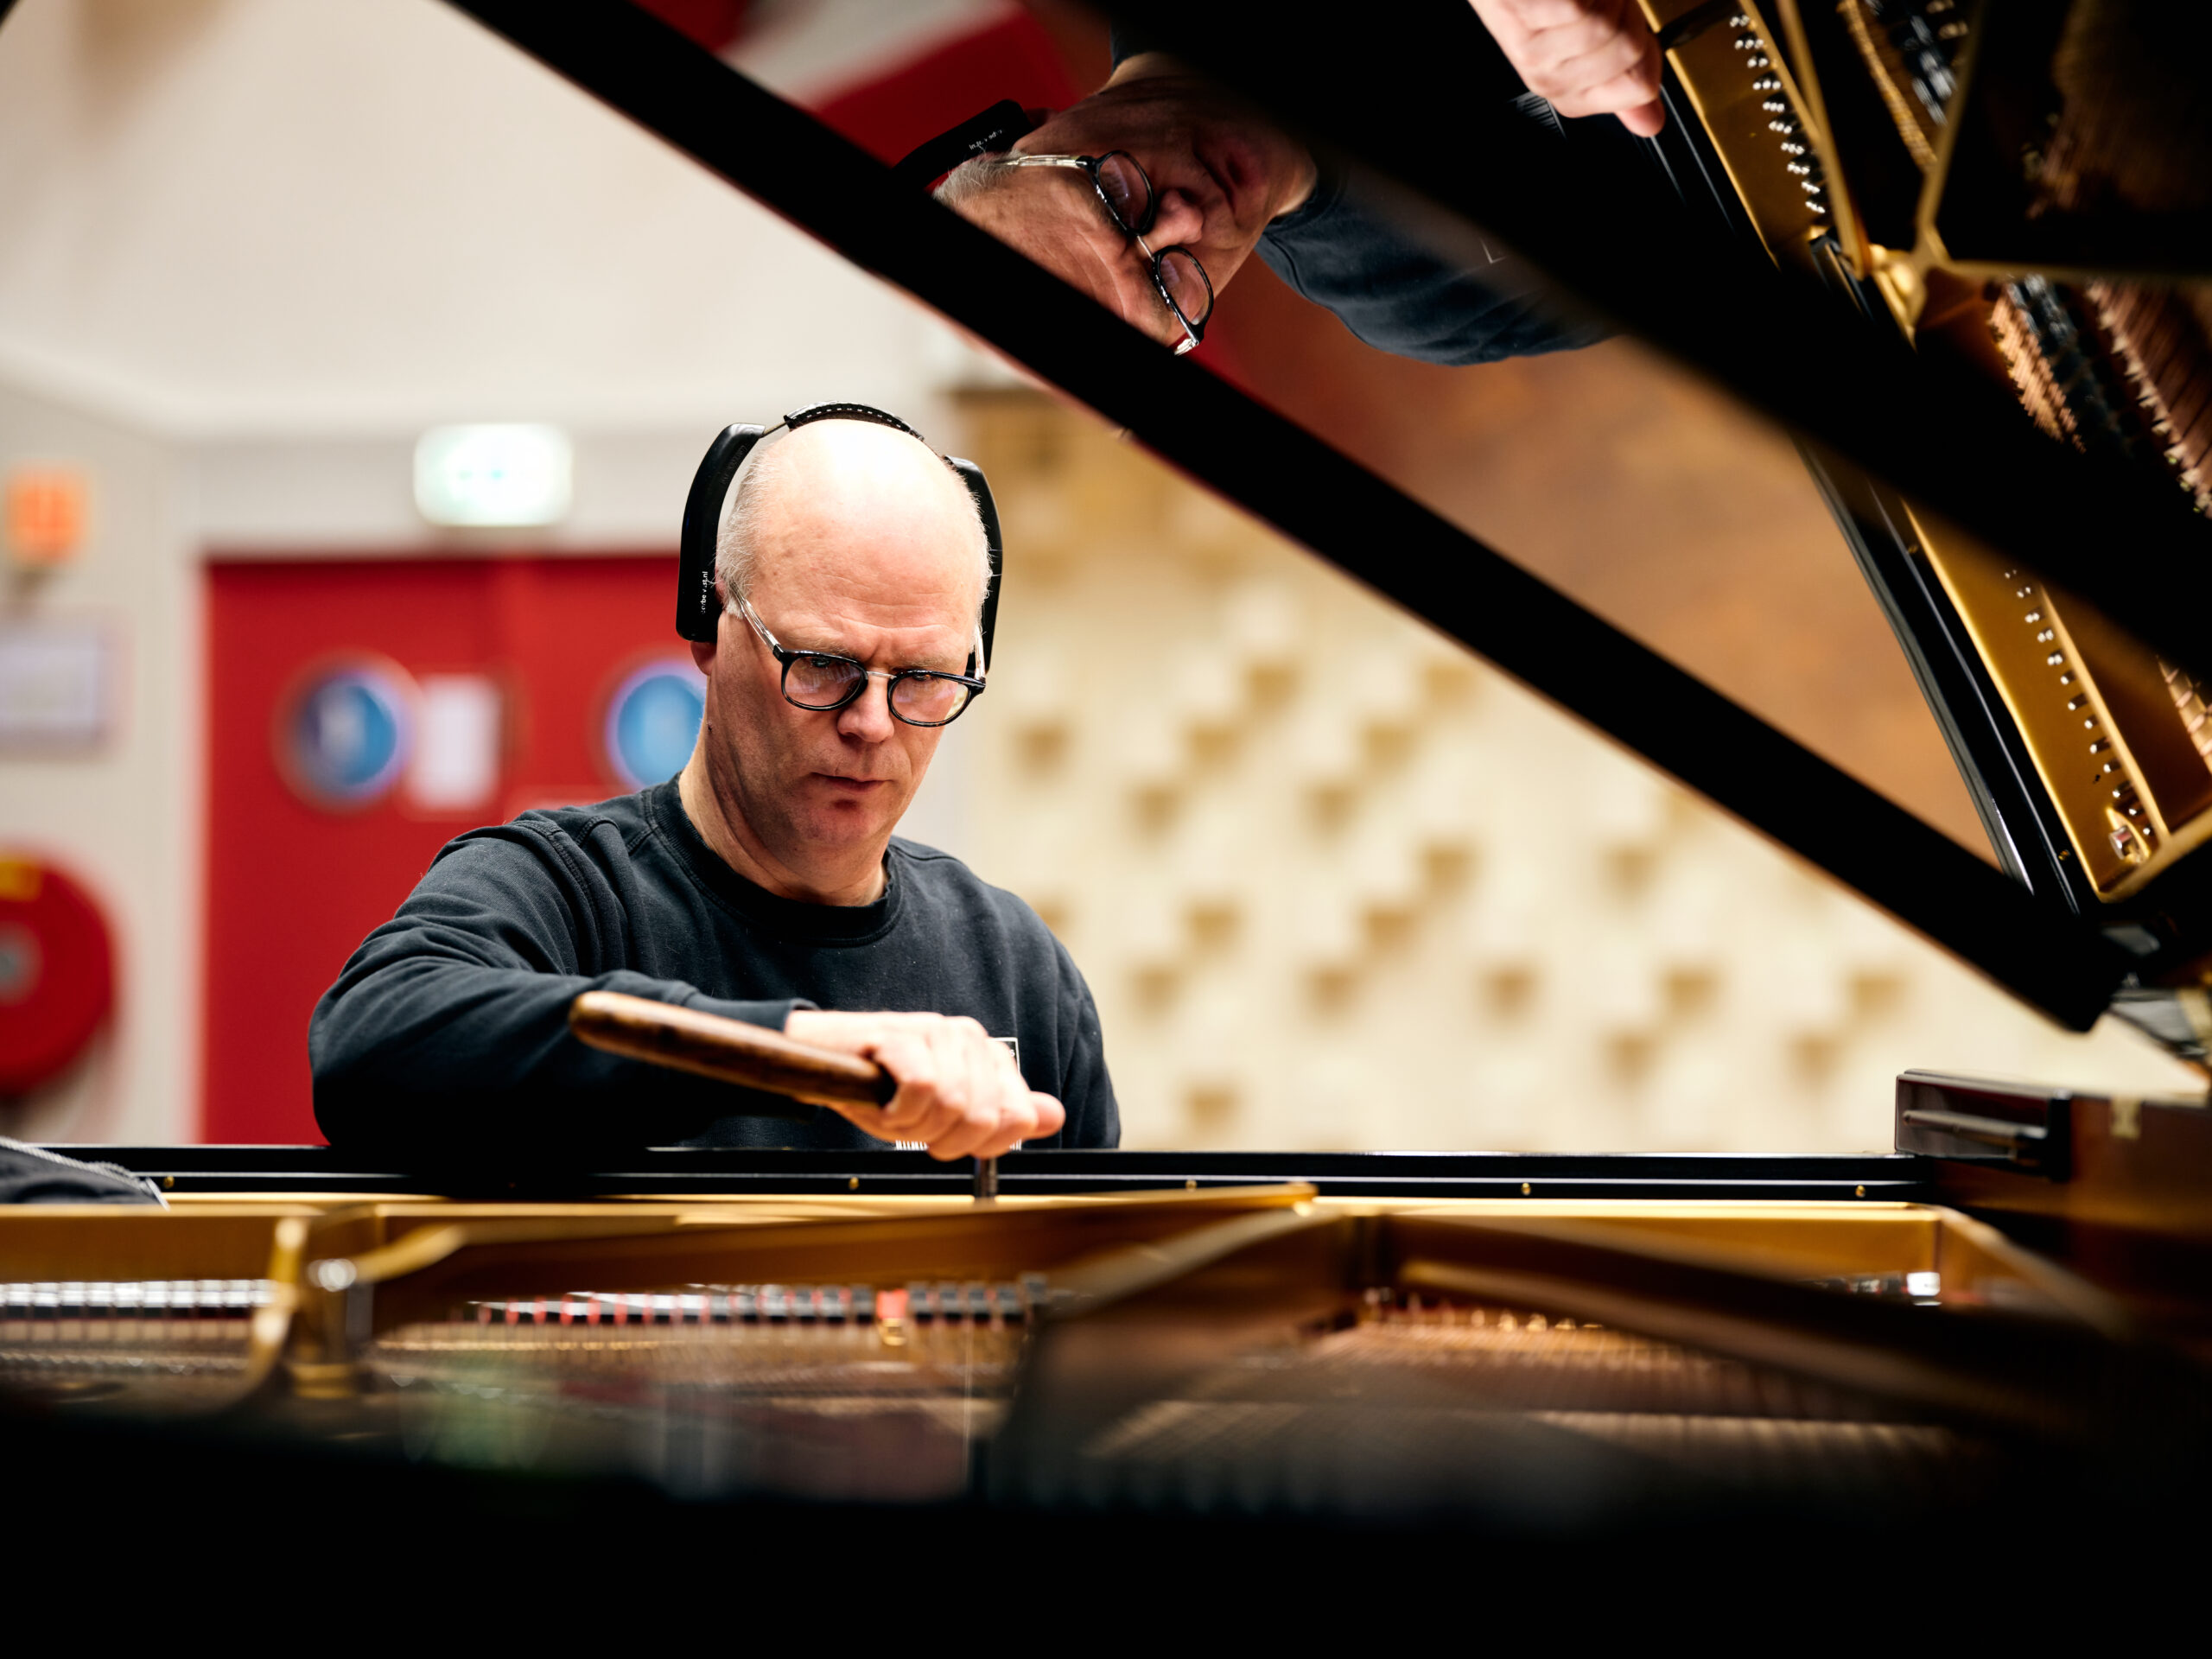 Charles Rademaker, piano technician, at Muziekcentrum van de Omroep (MCO) Studio 1